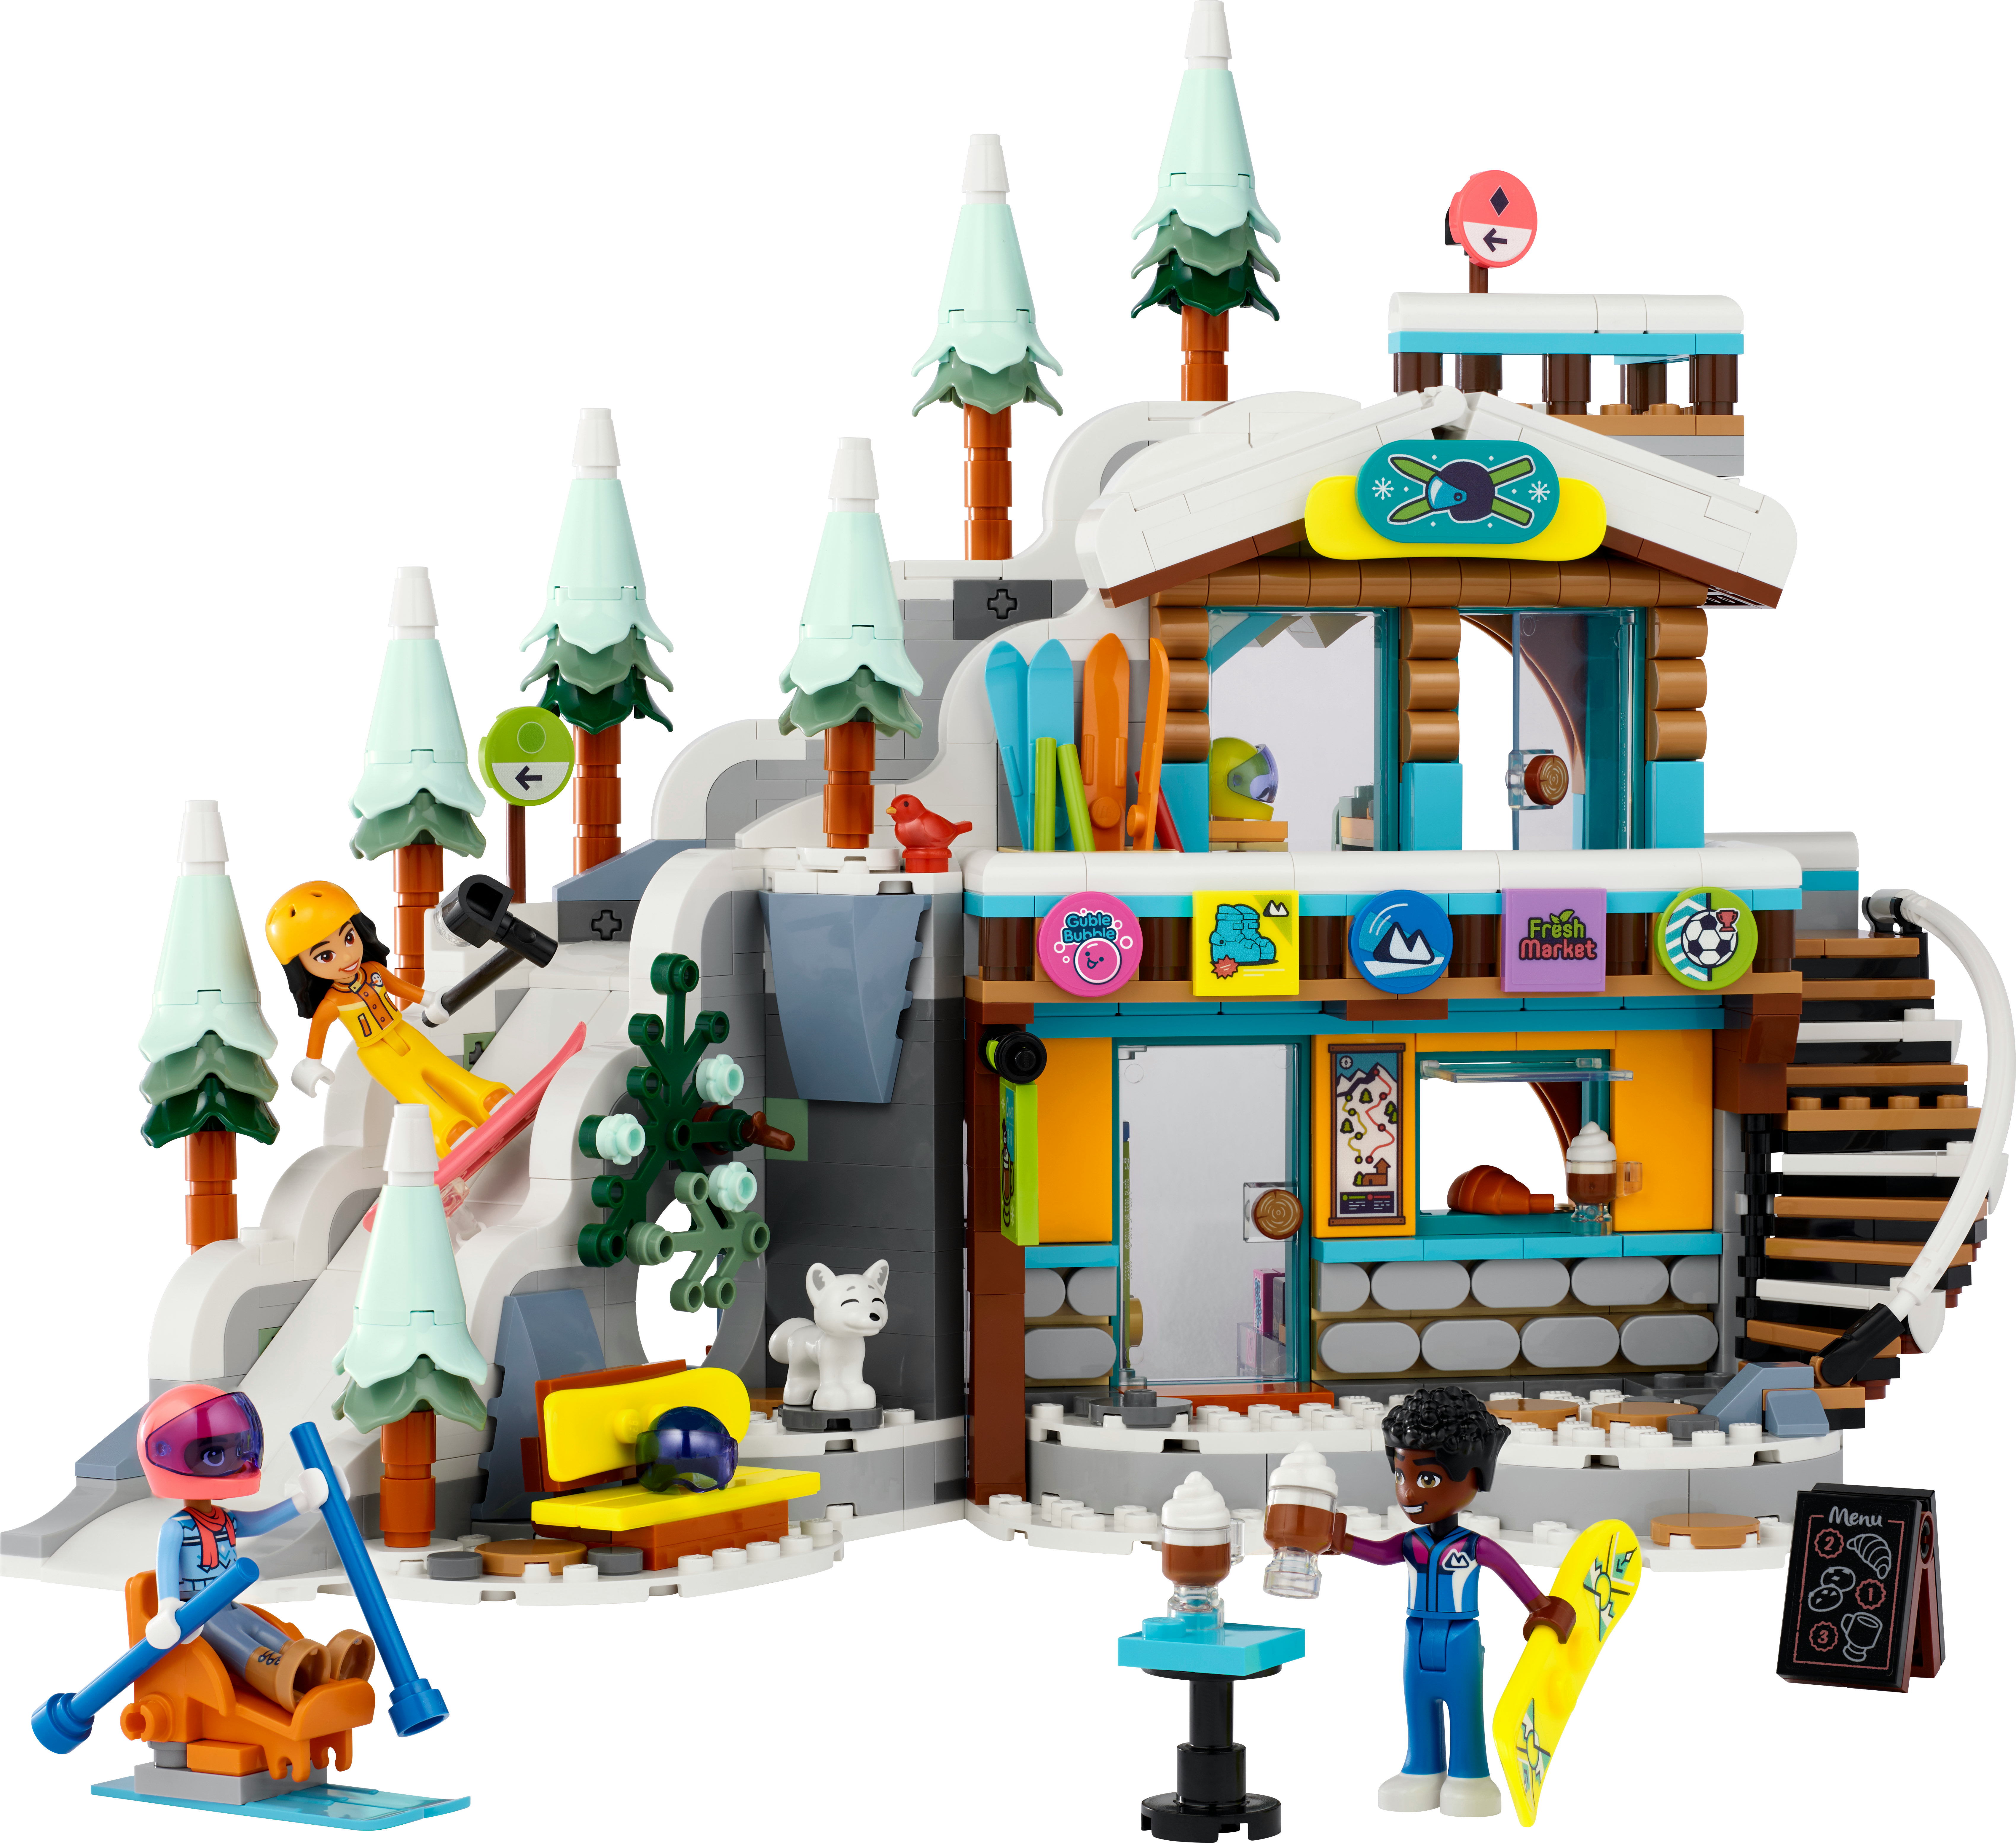 LEGO Friends 41756 Skipiste und Cafe